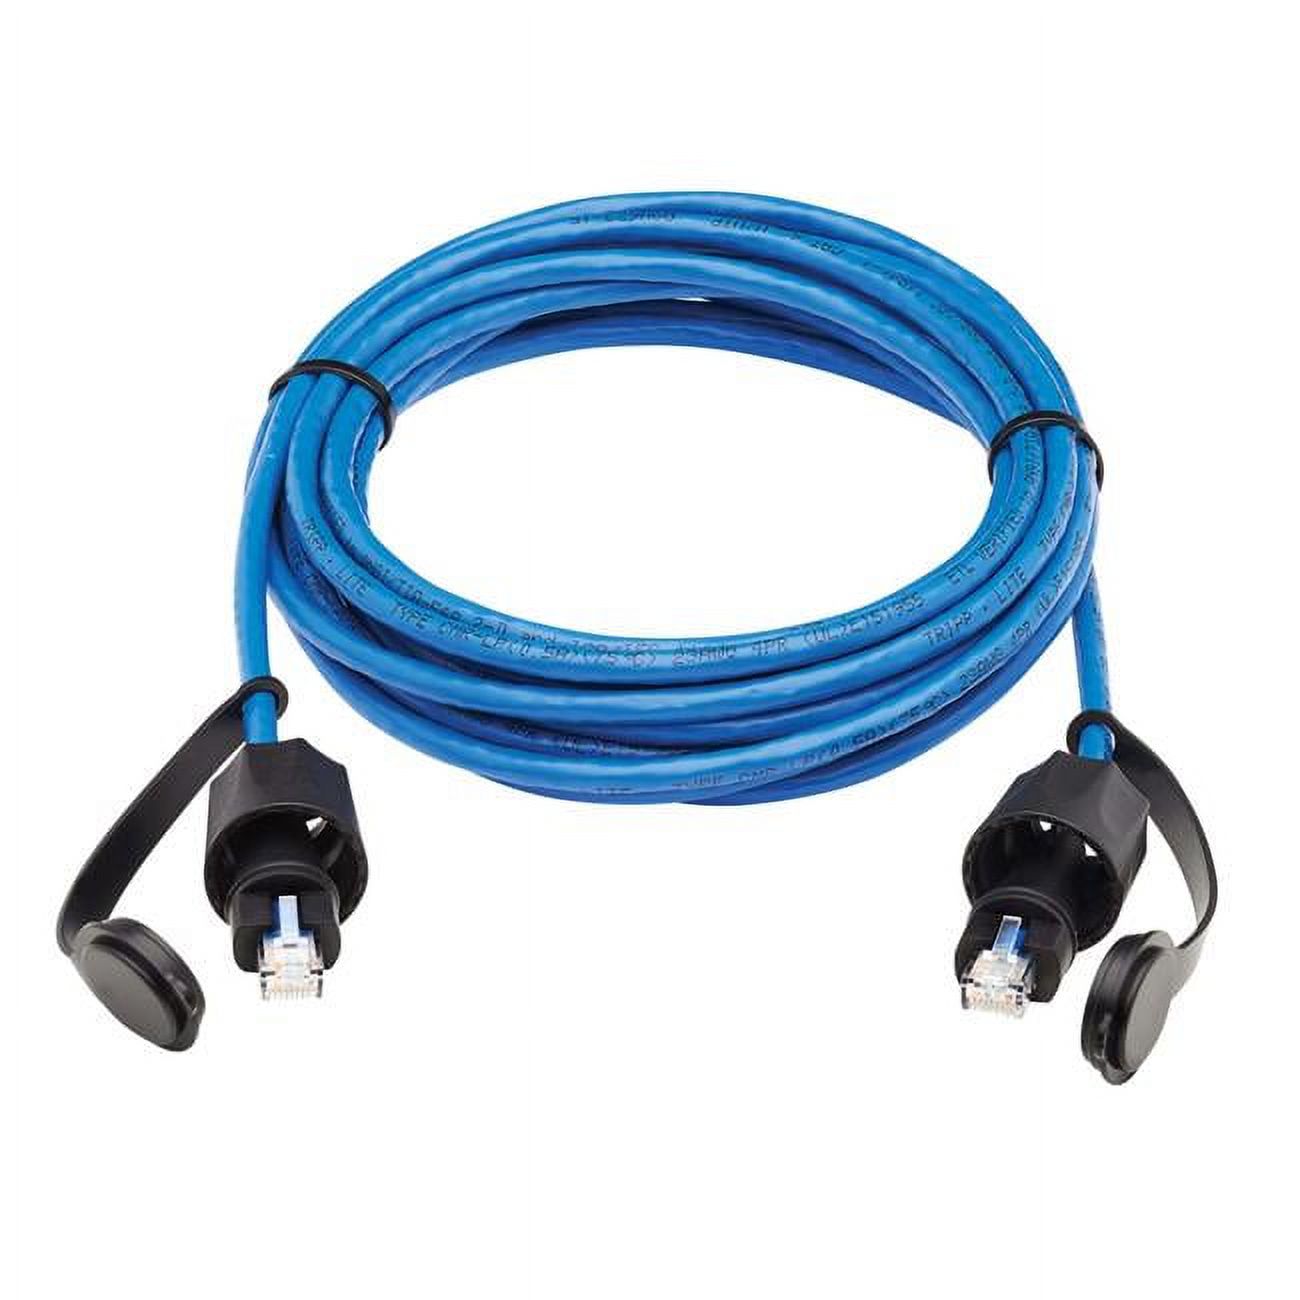 Eaton Tripp Lite Series Industrial Cat6 UTP Ethernet Cable (RJ45 M/M), 100W PoE, CMR-LP, IP68, Blue, 50 ft. (15.24 m) - image 1 of 6